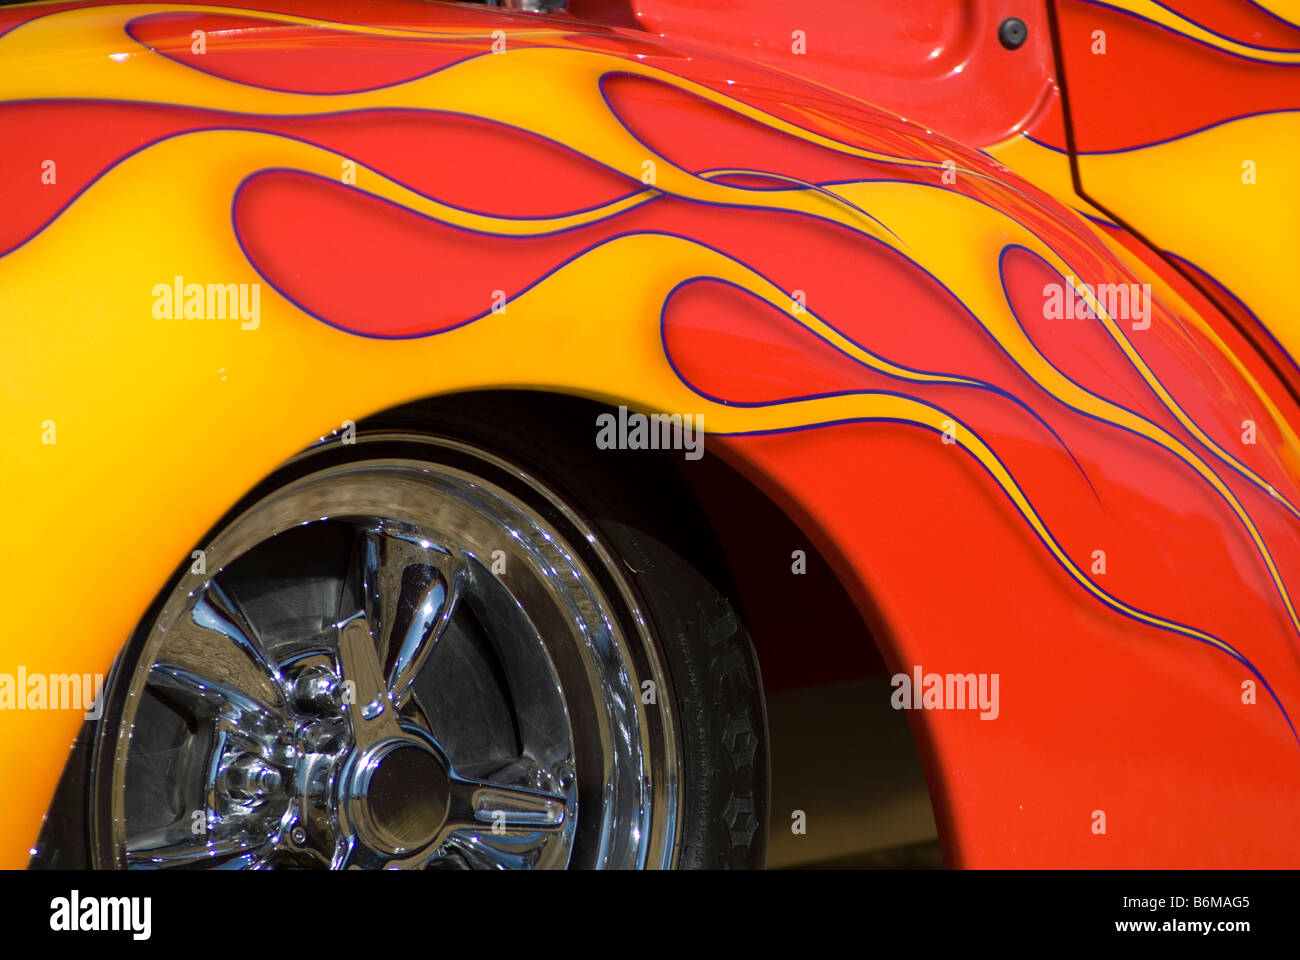 Schutzblech Ein Showcar Bei Einer Hot Rod Show Mit Flammen Drauf Gemalt Stockfotografie Alamy